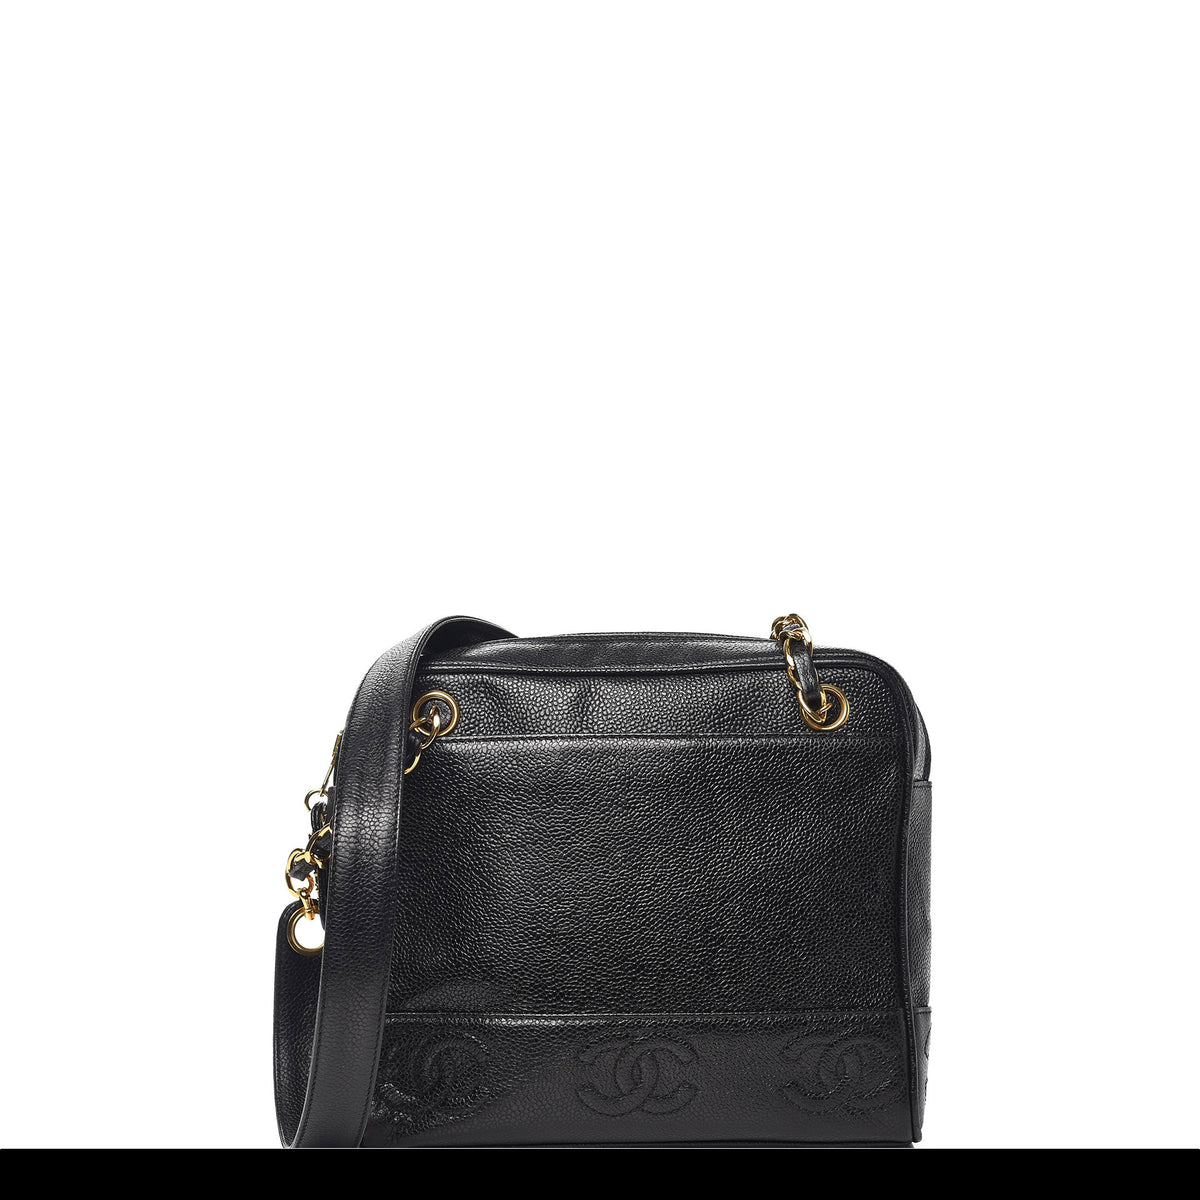 CHANEL - Vintage V-Stitched Black CC Leather Box Shoulder Bag / Crossbody